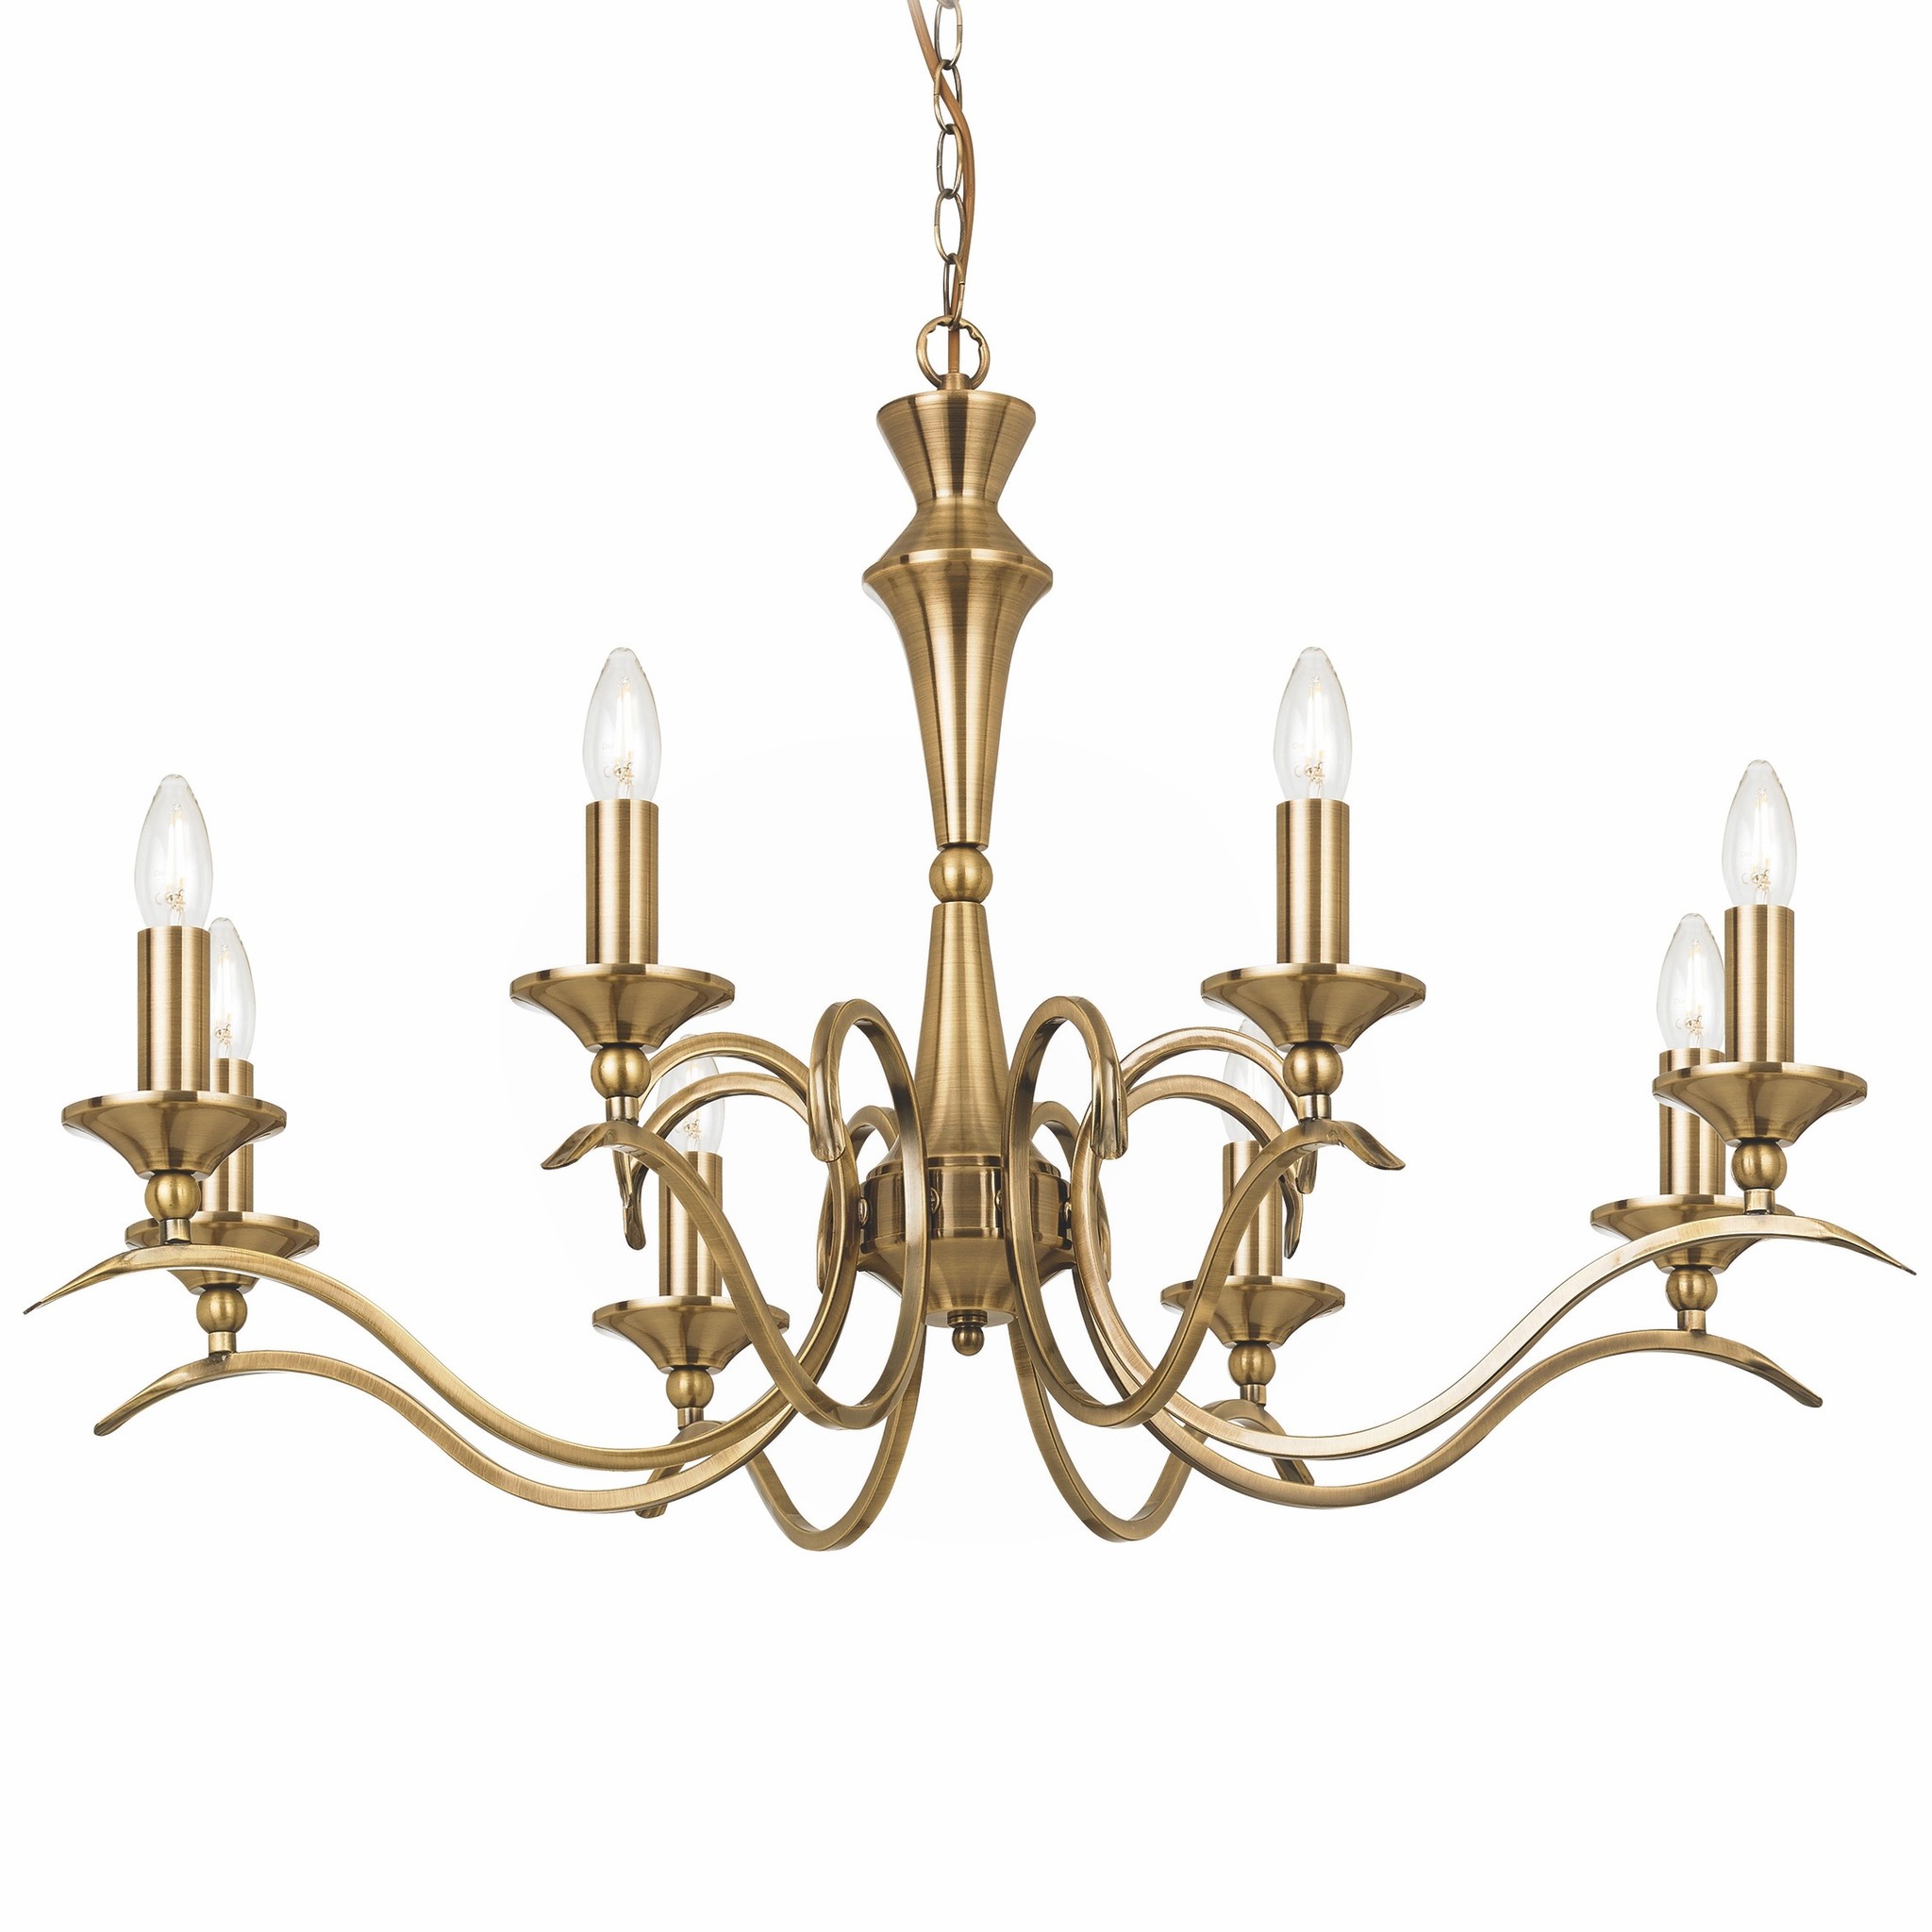 https://cdn.webshopapp.com/shops/214805/files/265616072/coralline-8-light-antique-brass-chandelier.jpg